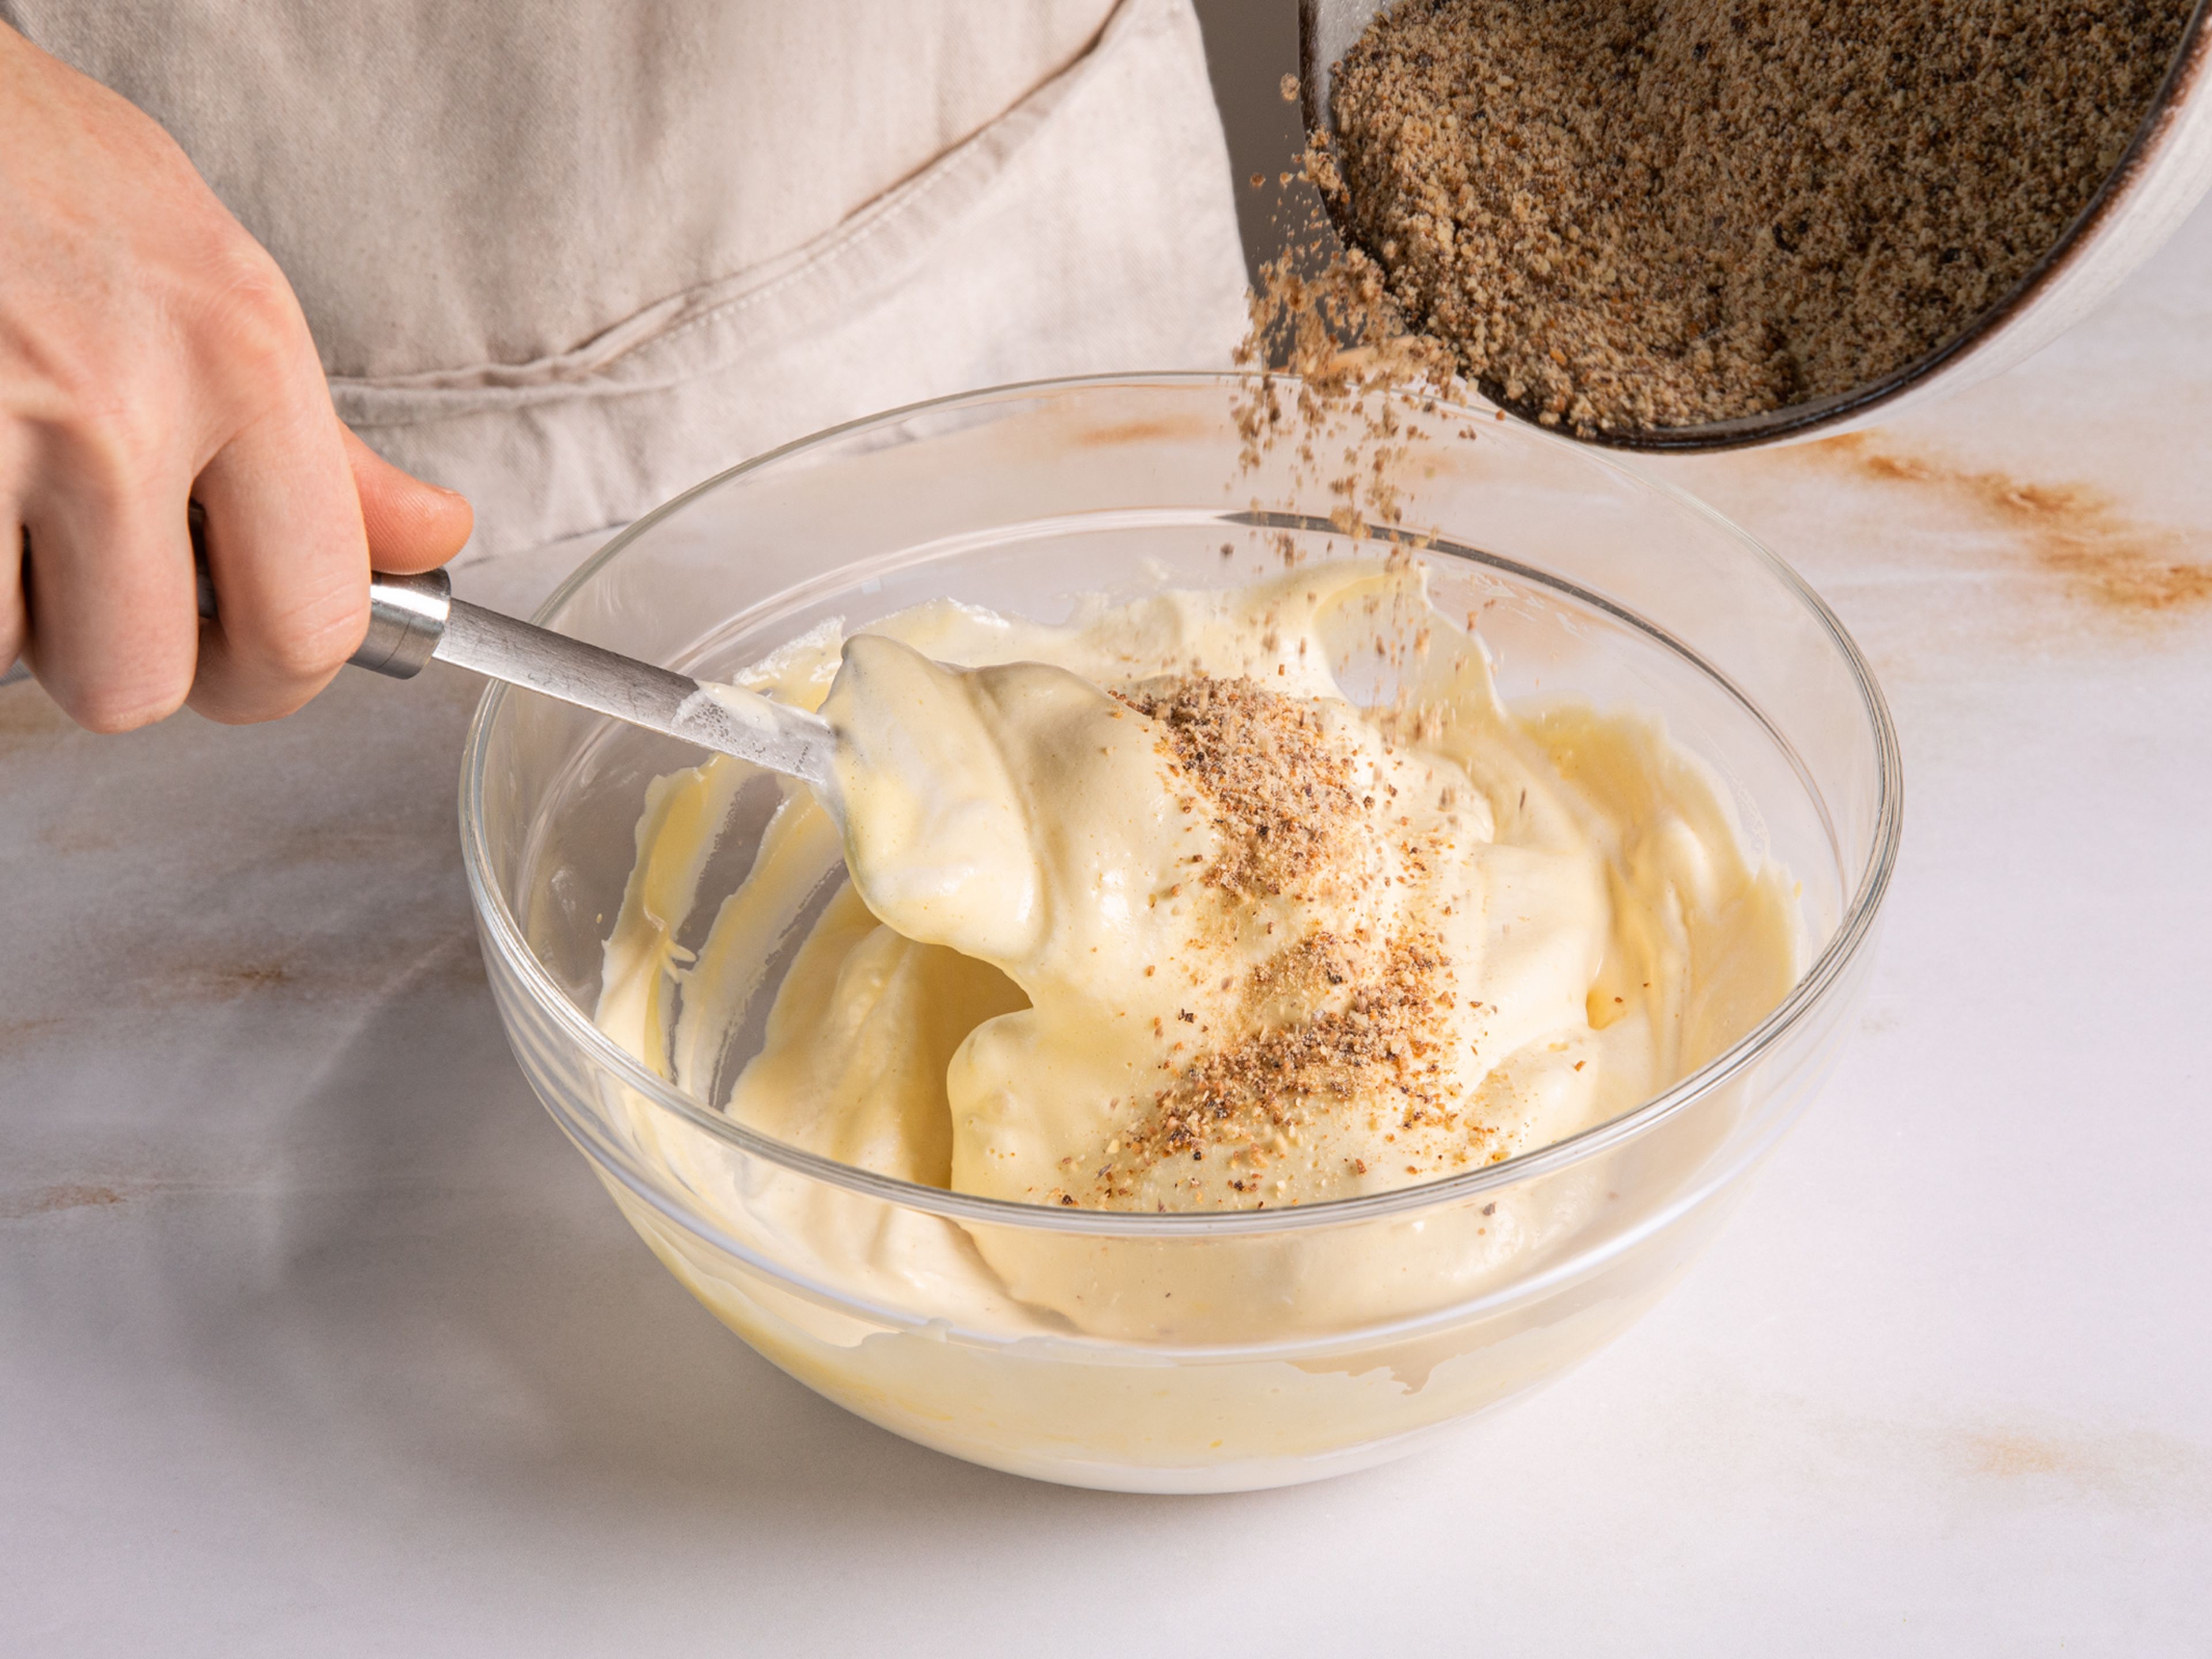 Für den Biskuit die gemahlenen Mandeln im Ofen bei 180°C rösten und abkühlen lassen, dann mit Mehl mischen. Eier trennen und das Eigelb schaumig rühren. Das Eiweiß mit einer Prise Salz etwas aufschlagen und langsam den Zucker zugeben, dann steif schlagen. Eischnee vorsichtig mit dem Eigelb vermengen und den Mehl-Nuss-Mix unterheben. In einer mit Backpapier ausgelegten Kuchen- oder Auflaufform (ca. 14 x 12 cm) bei 190°C für 8-12 Minuten backen.